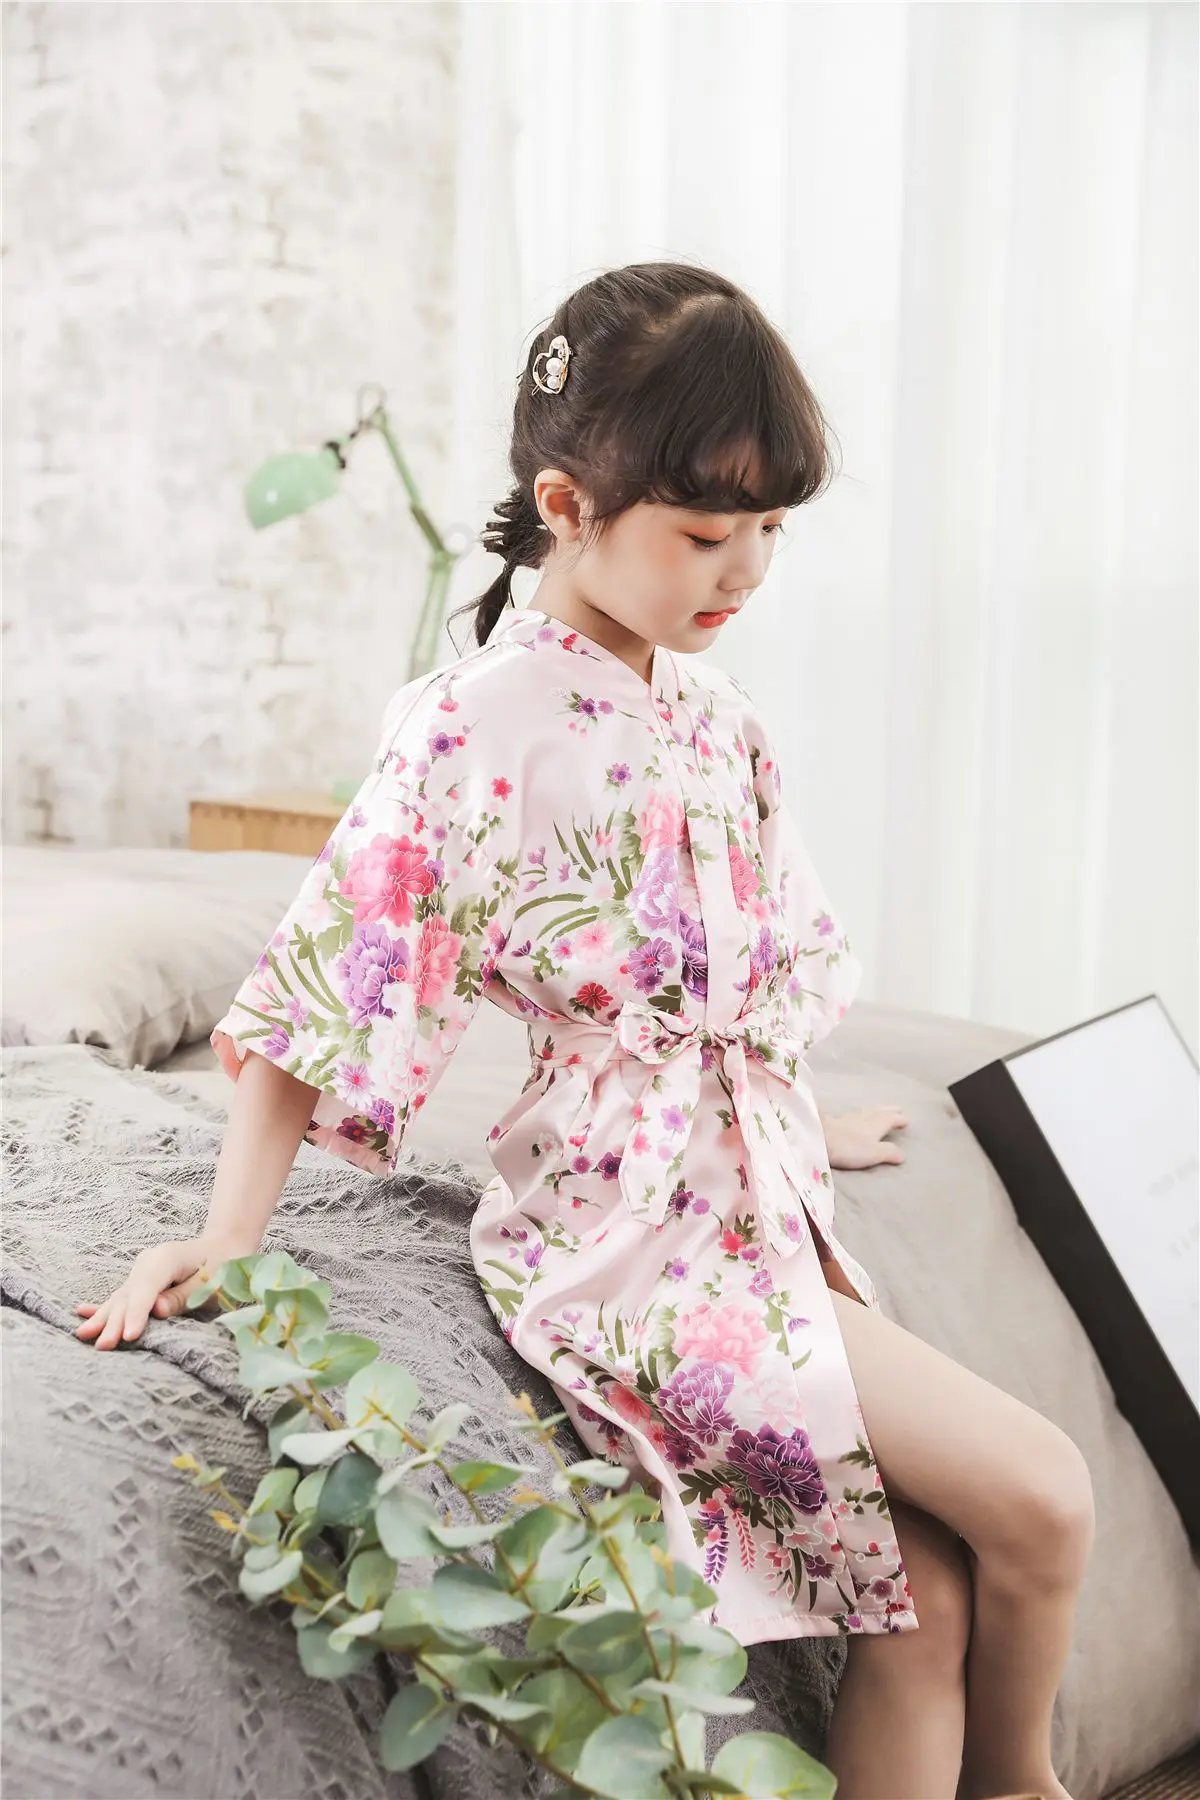 Летние японские пижамы для девочек, одежда, детский халат с цветочным принтом, Детские домашние кимоно, традиционные костюмы, детская домашняя мягкая Пижама